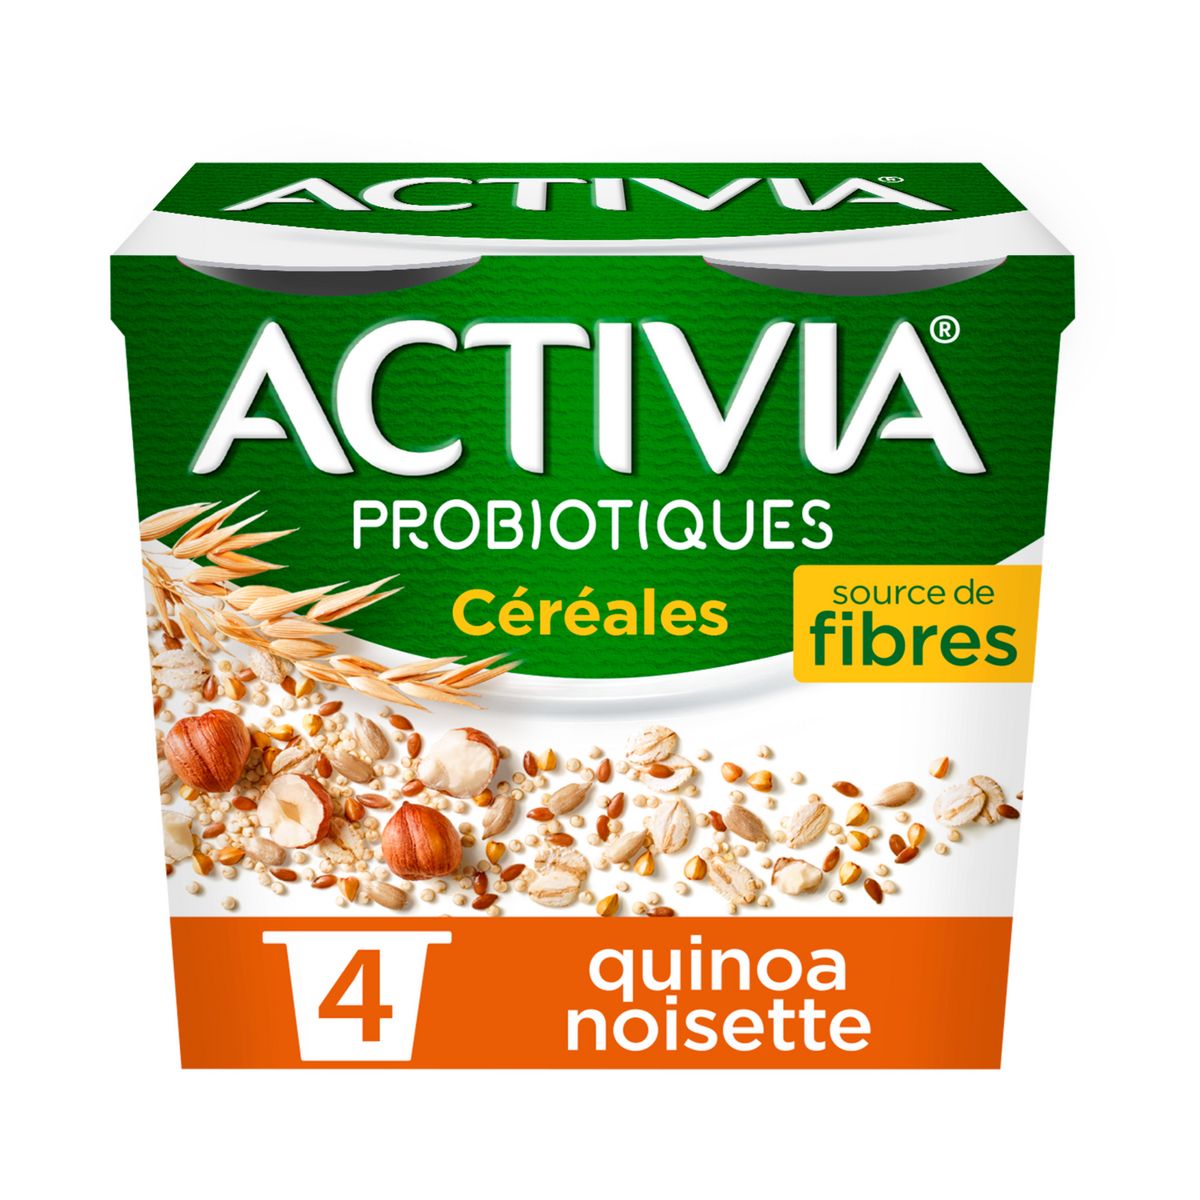 ACTIVIA Probiotiques - Yaourt céréales bifidus quinoa noisette 4x120g